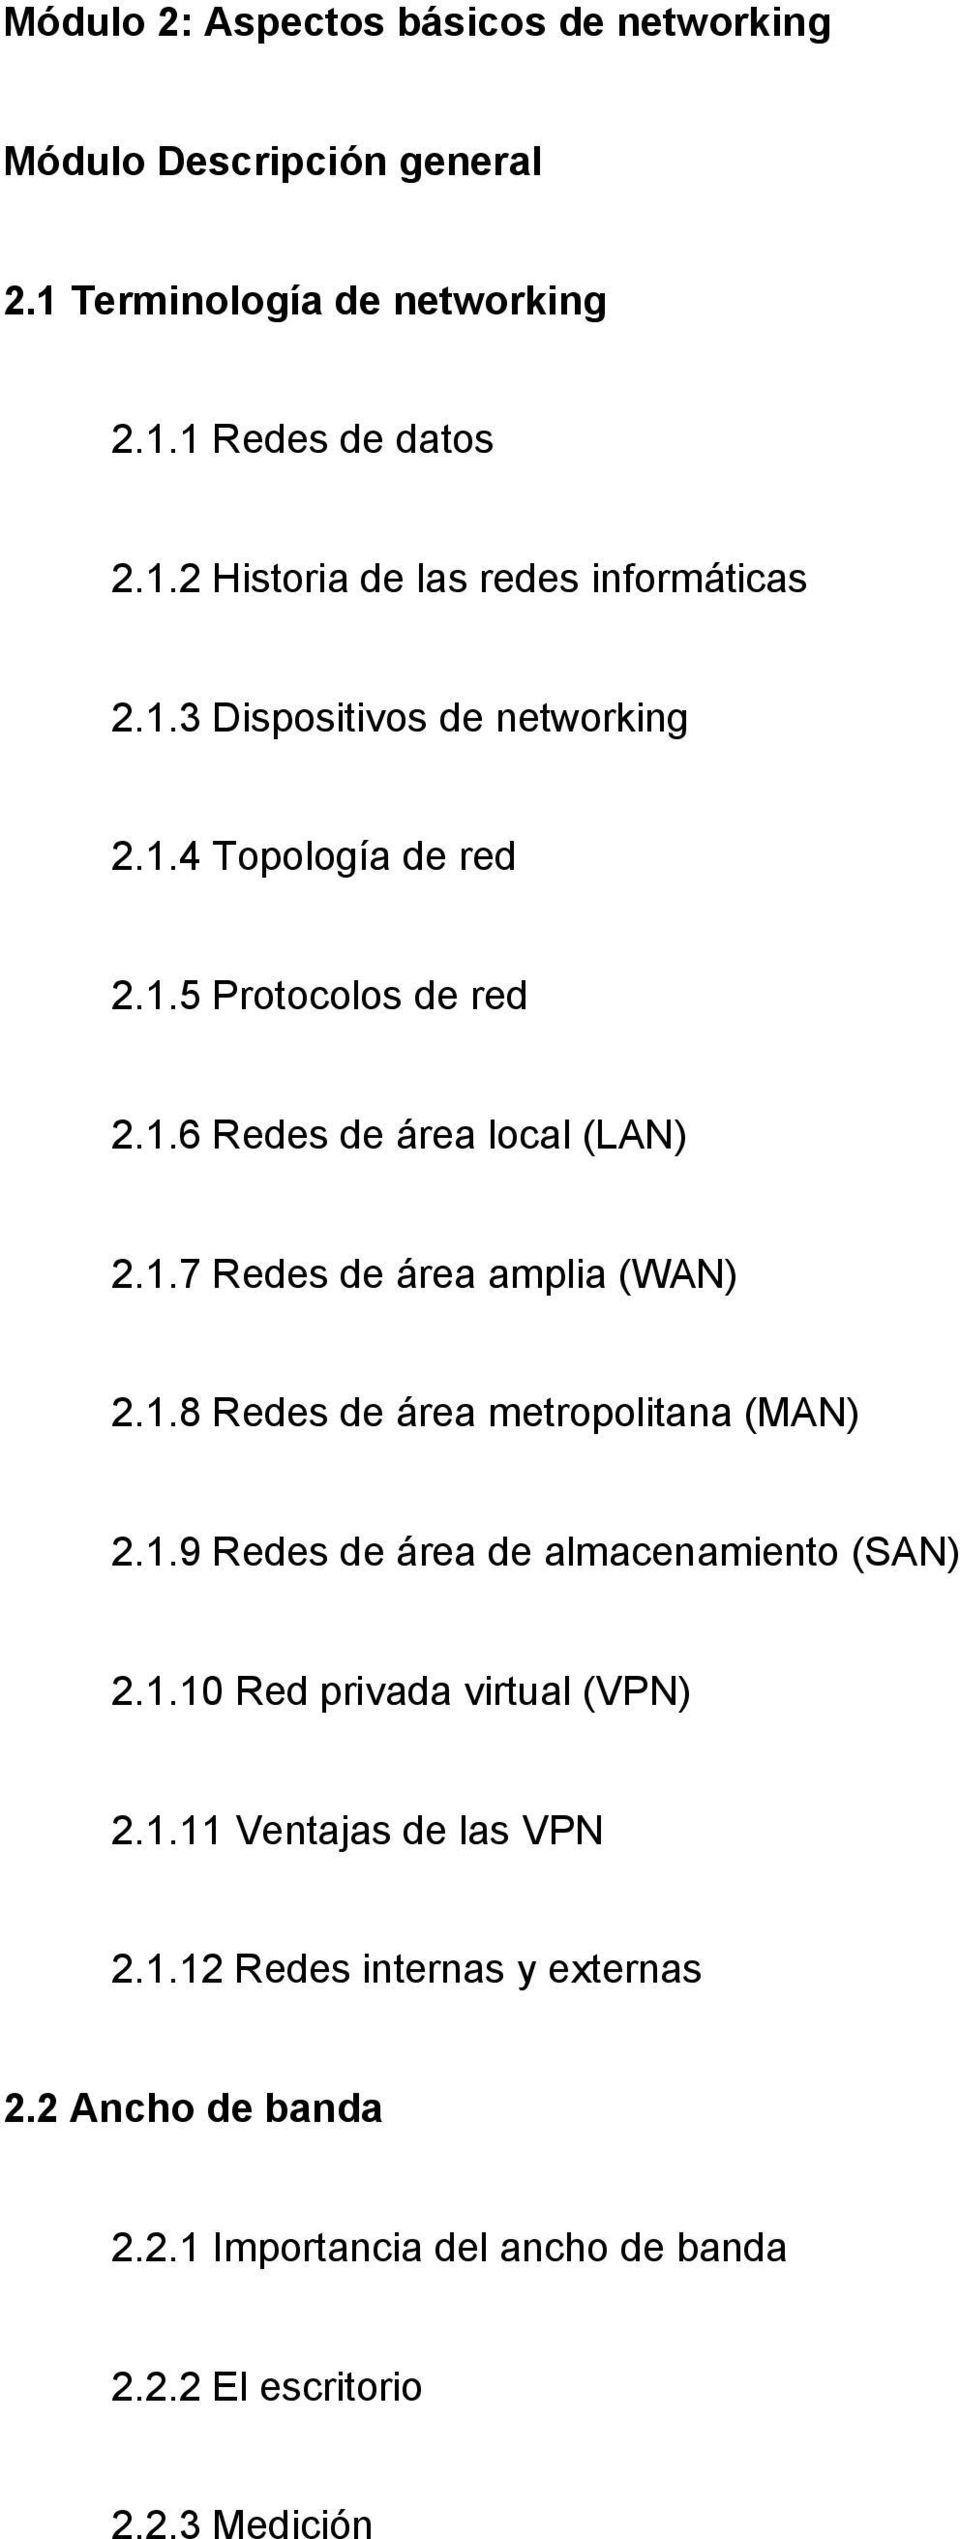 1.8 Redes de área metropolitana (MAN) 2.1.9 Redes de área de almacenamiento (SAN) 2.1.10 Red privada virtual (VPN) 2.1.11 Ventajas de las VPN 2.